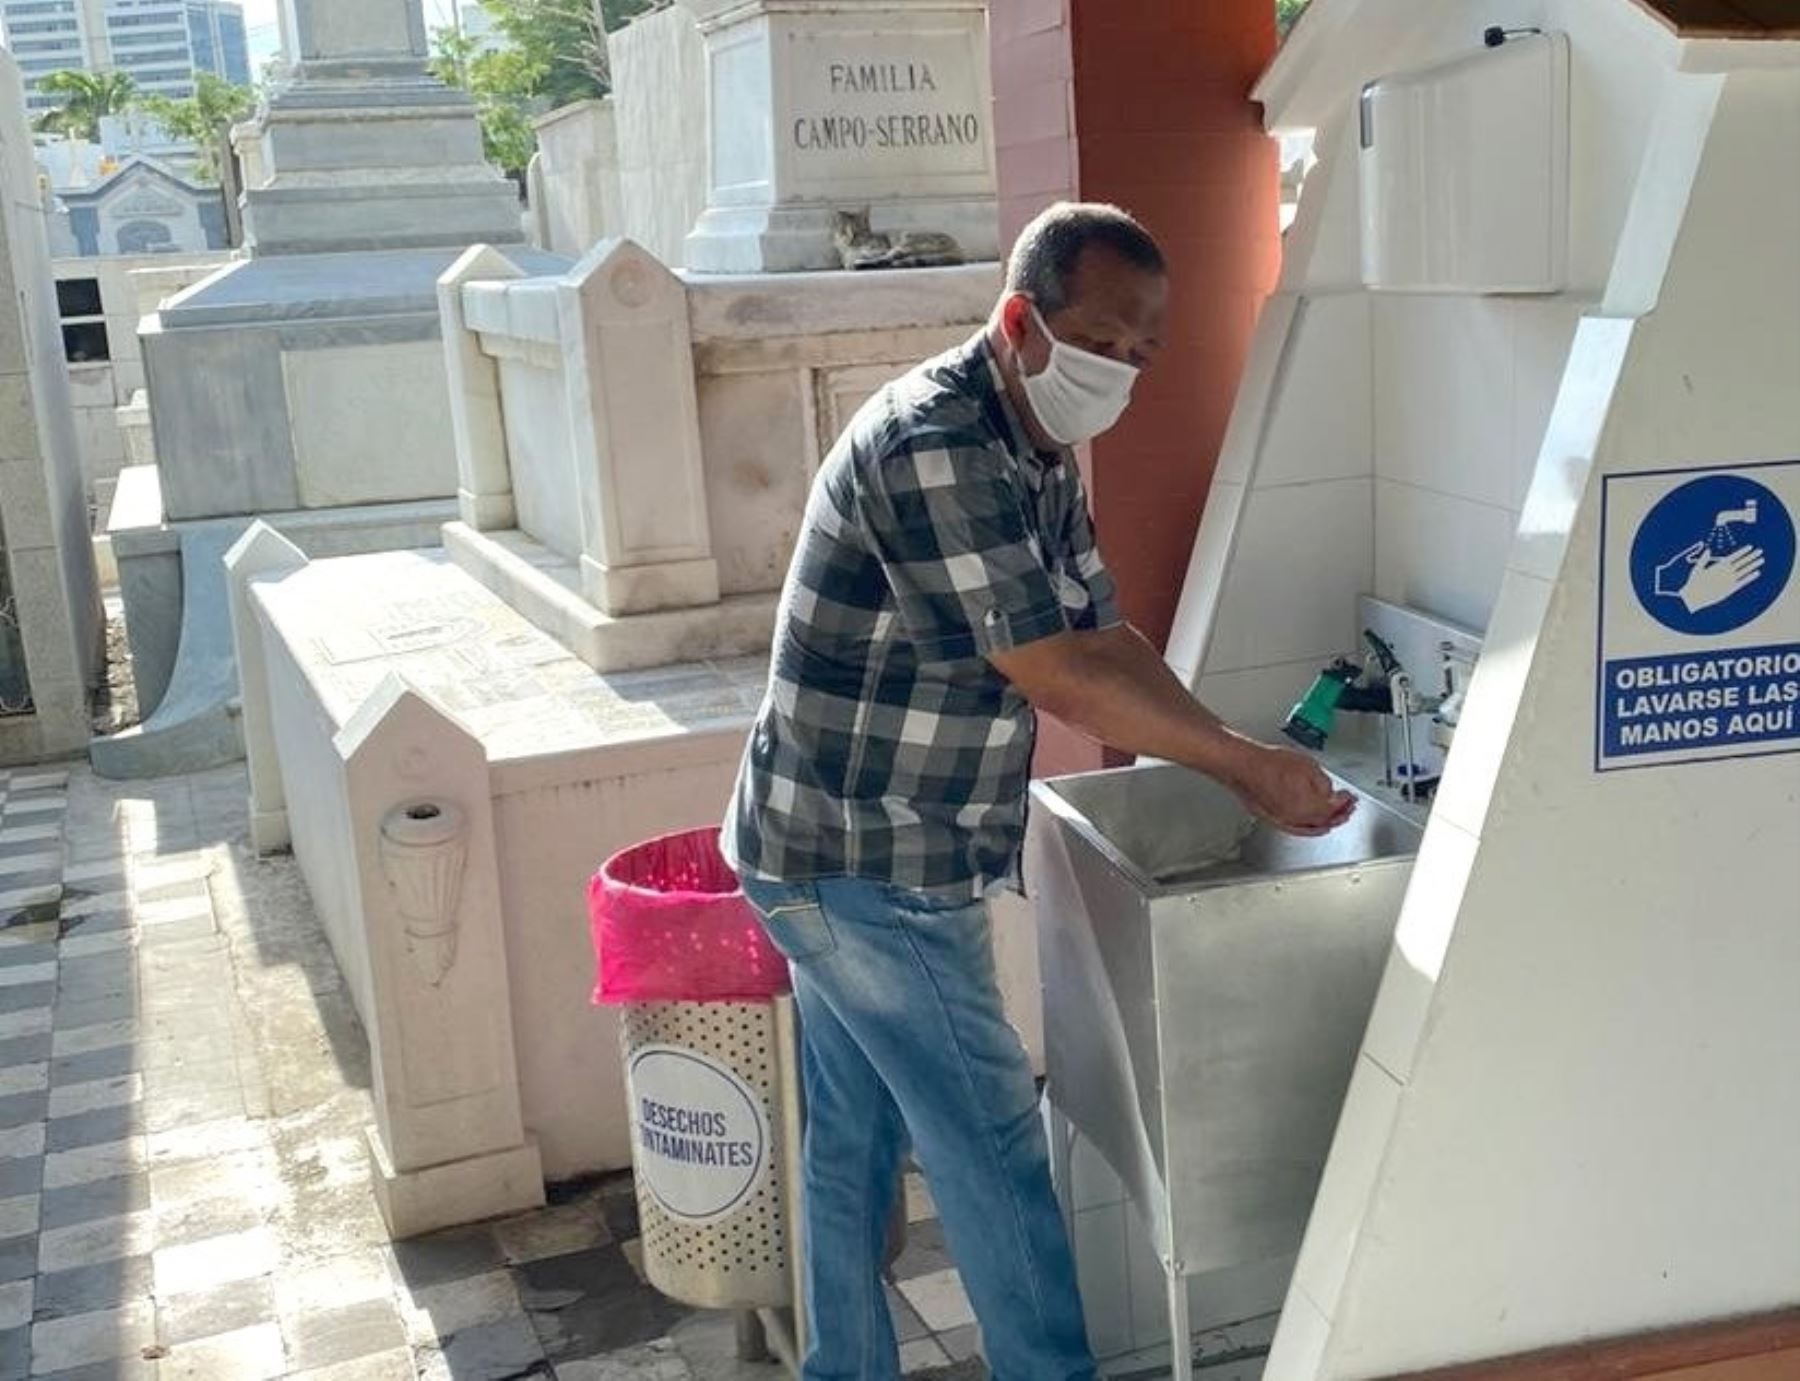 La Gerencia Regional de Salud de Lambayeque exhortó a los municipios de esa región implementar protocolos sanitarios en los cementerios para prevenir el contagio del covid-19 durante el próximo feriado largo. Foto: ANDINA/Difusión.